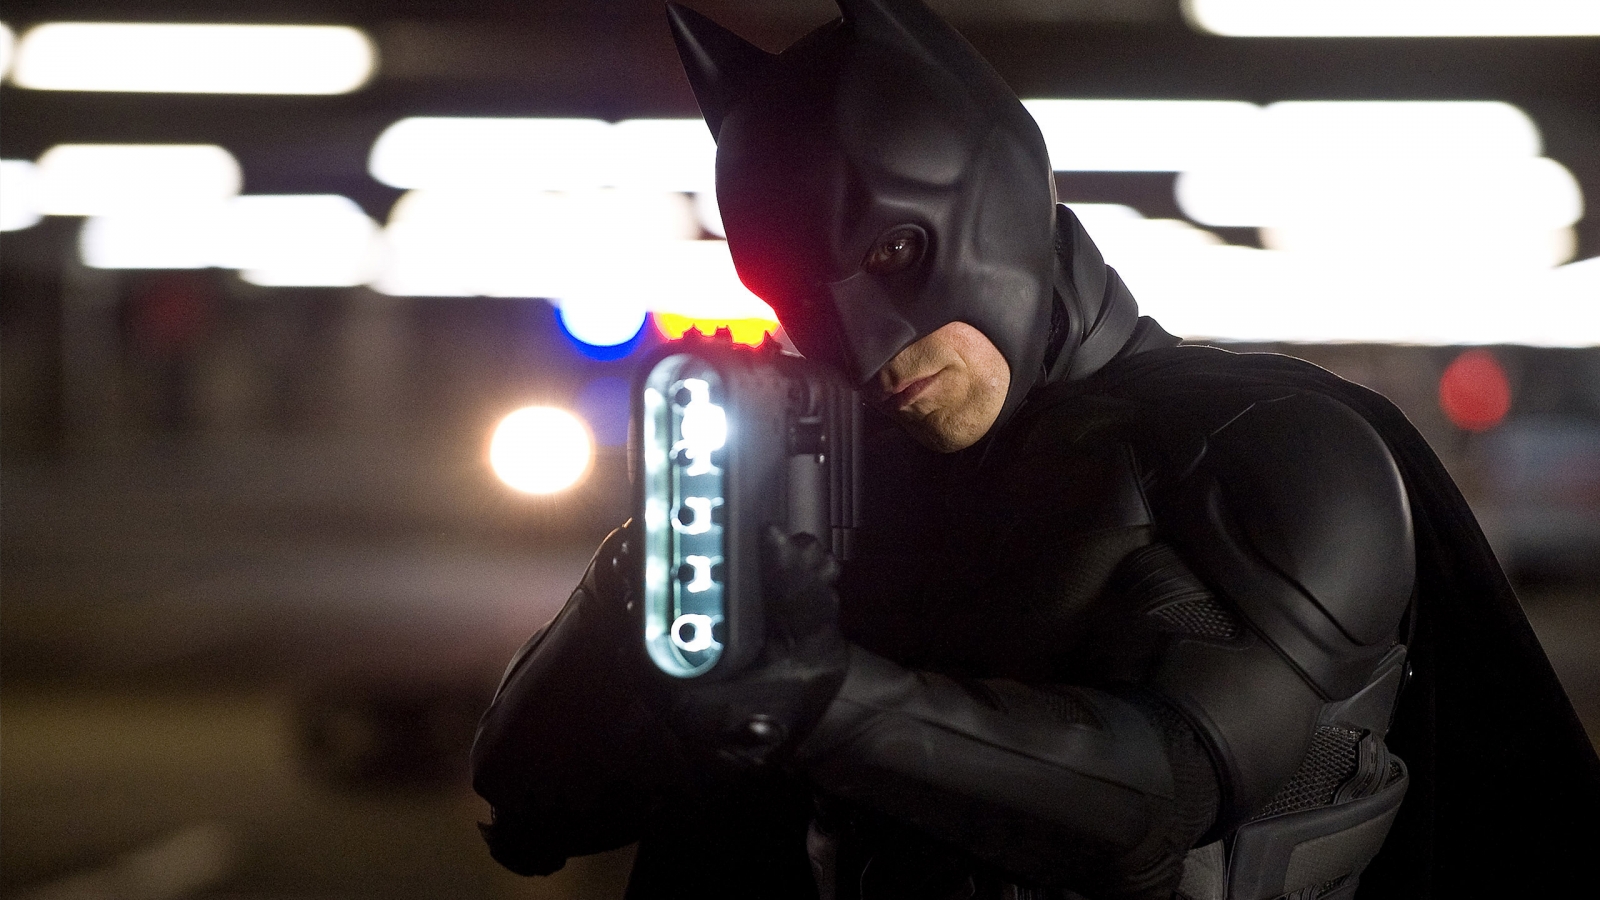 Batman Hands Up for 1600 x 900 HDTV resolution